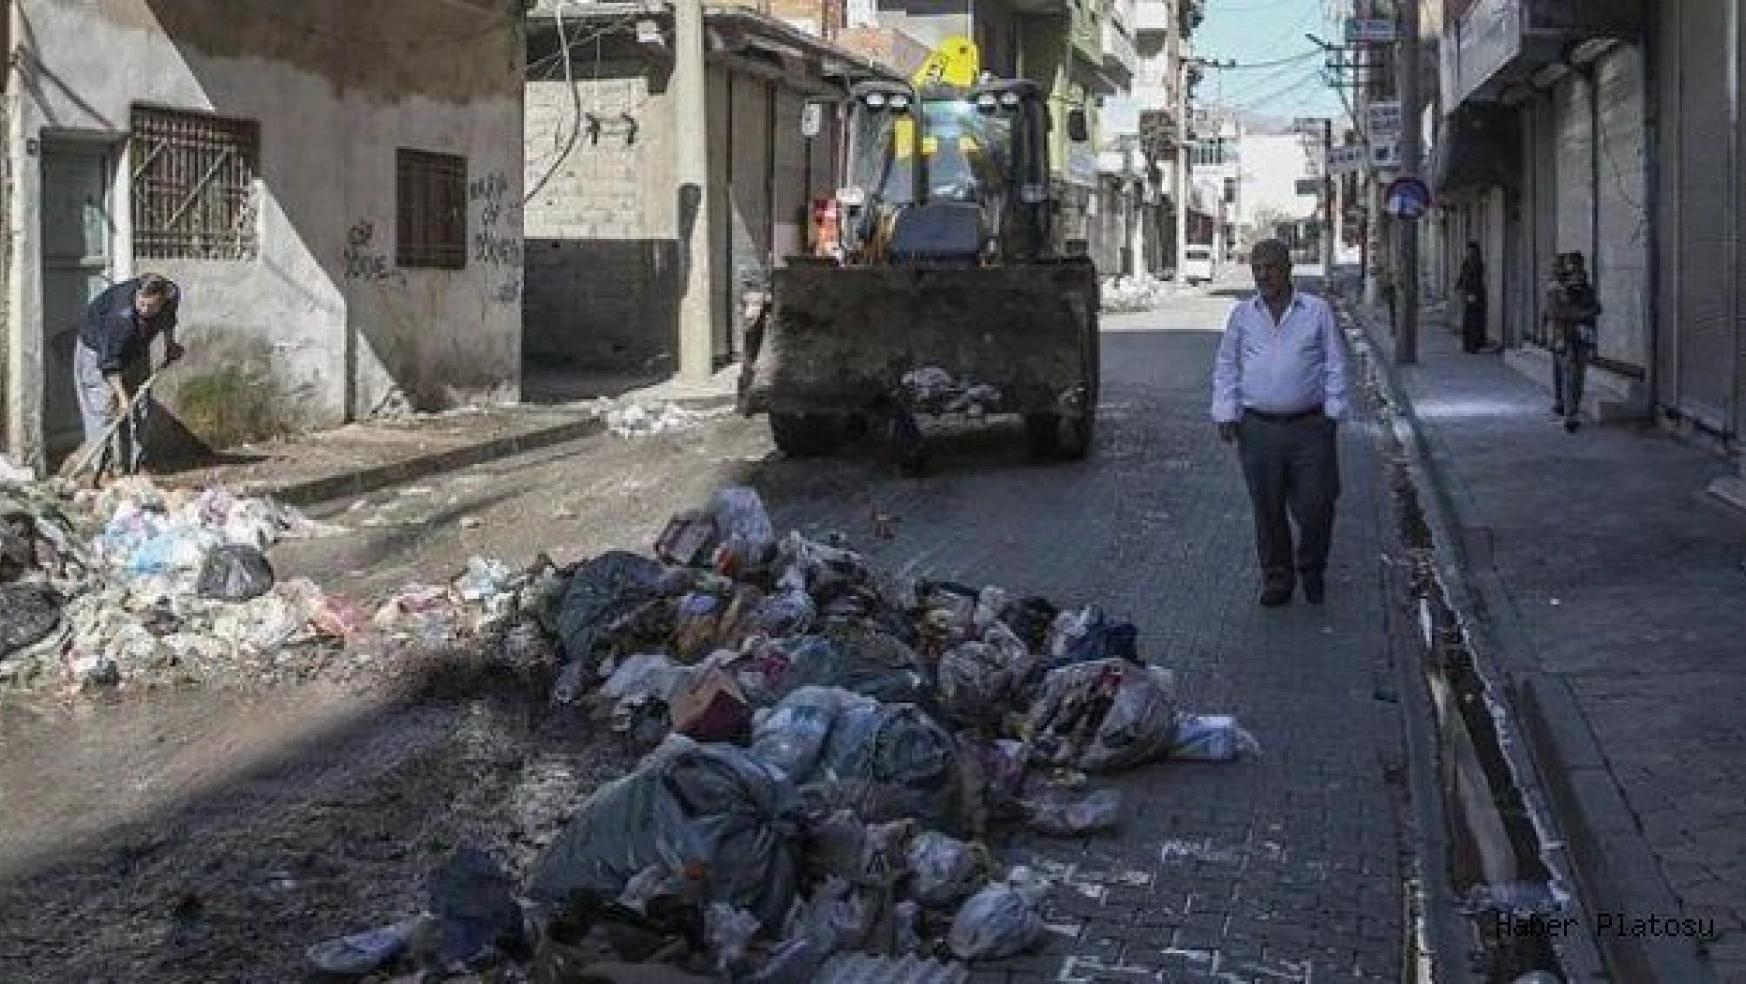 Cizre'de sokağa çıkma yasağı kaldırılıyor